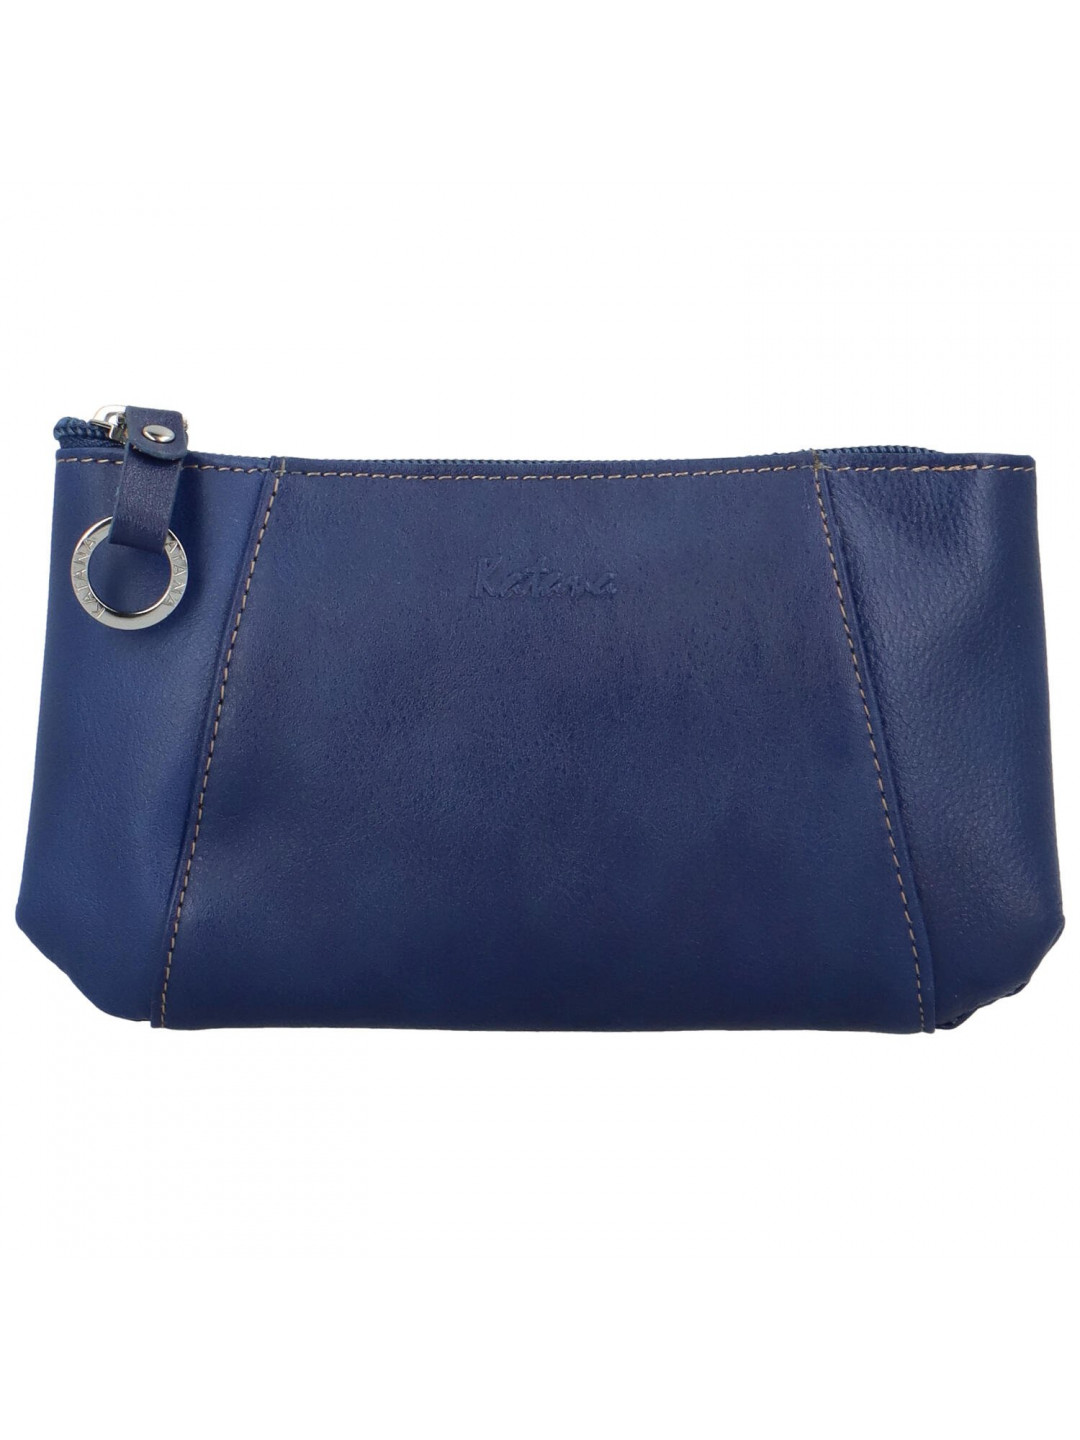 Trendy malá dámská peněženka Katana Beatricia modrá